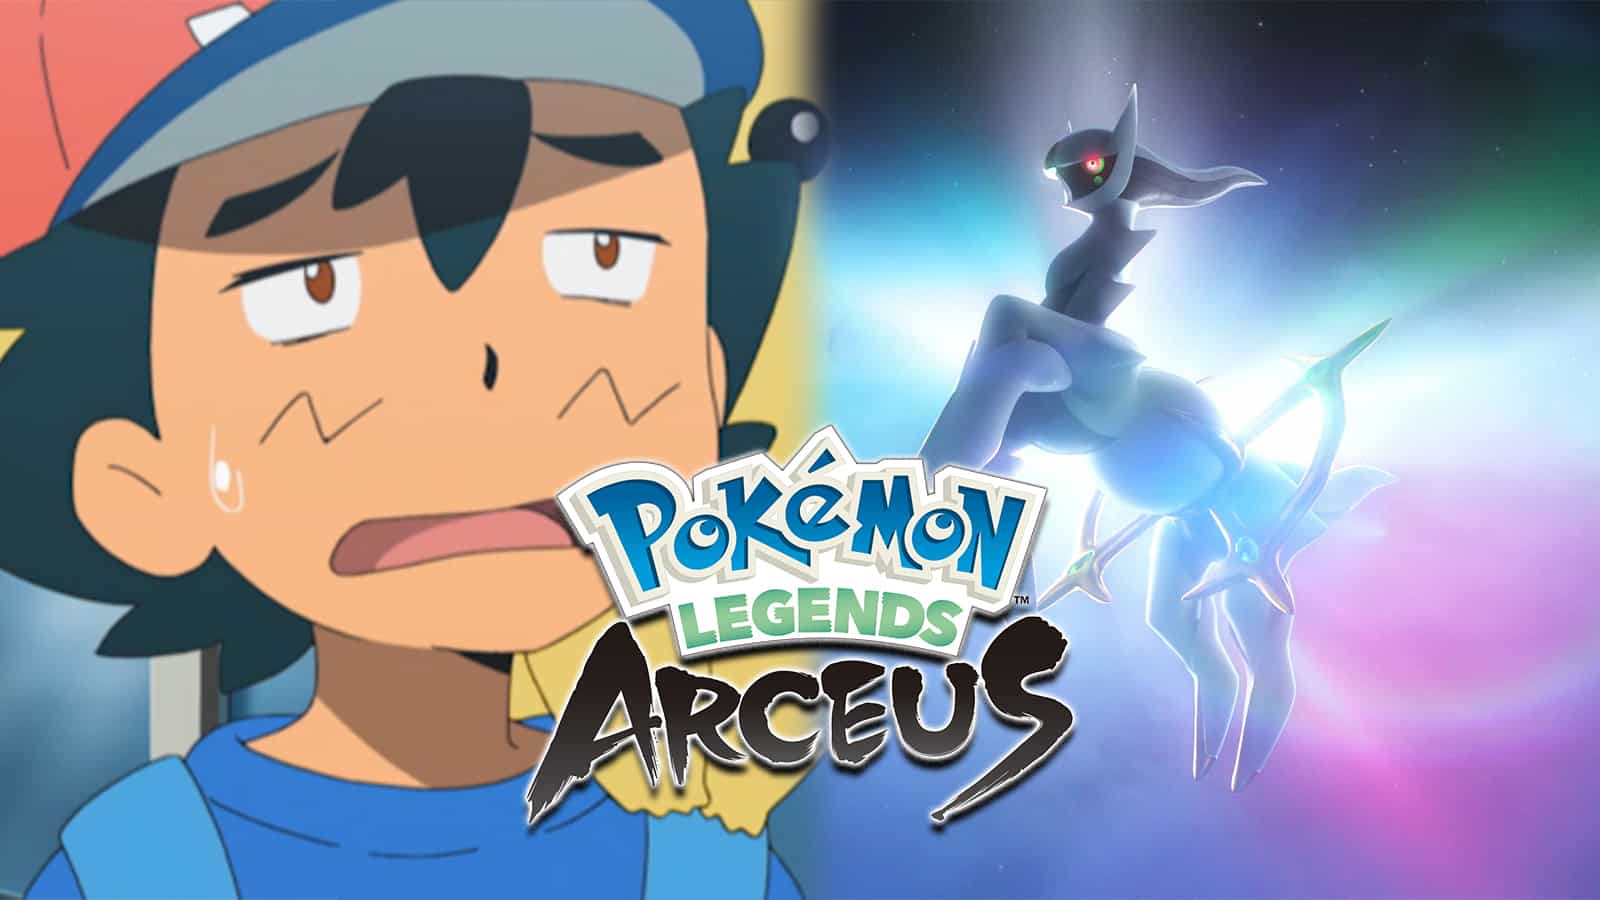 Pokemon Legends Arceus | Party of 12! | Details In Description